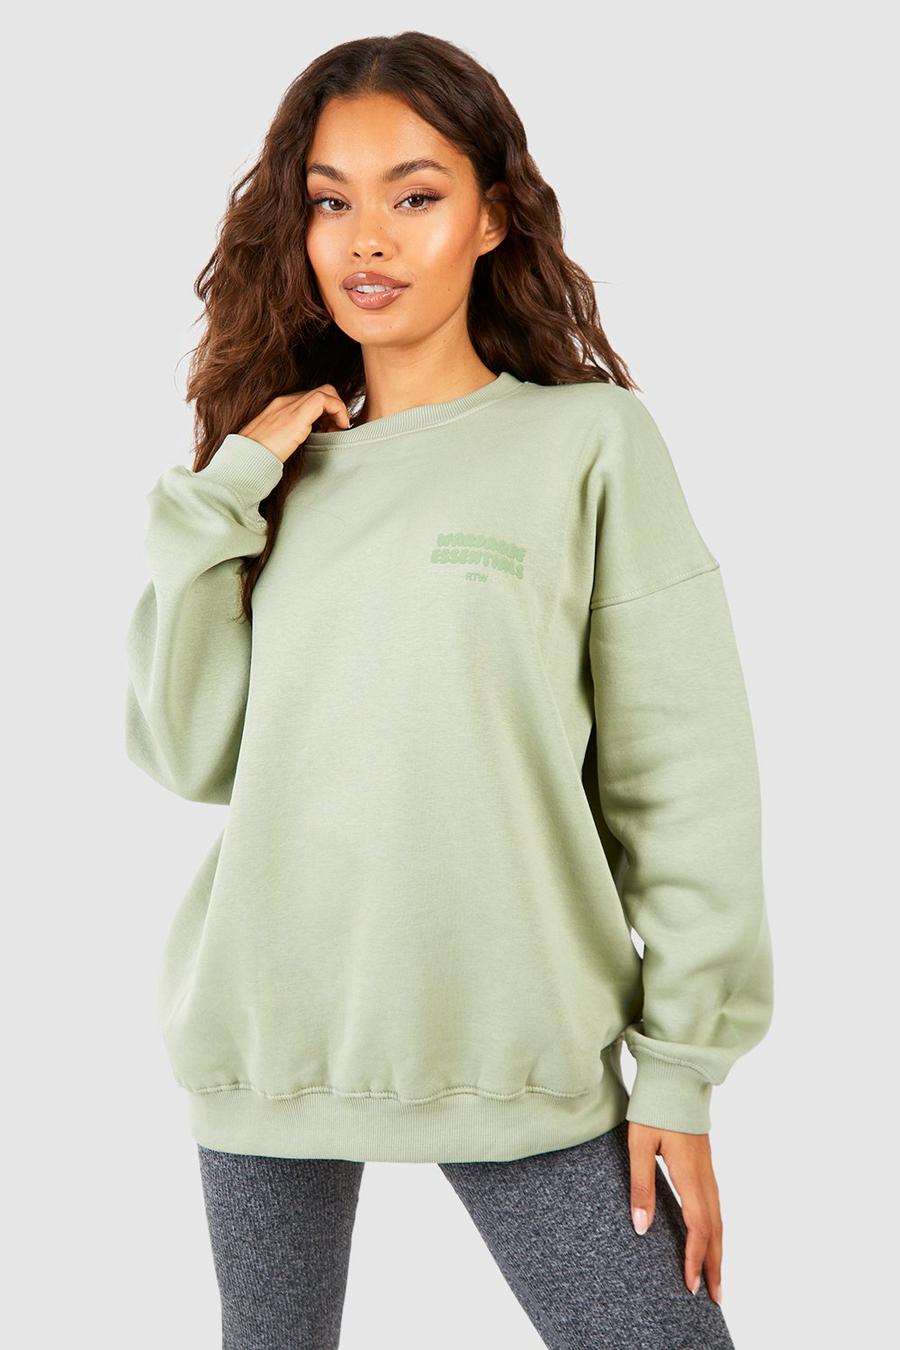 Sage Wardrobe Essentials Oversized Sweatshirt